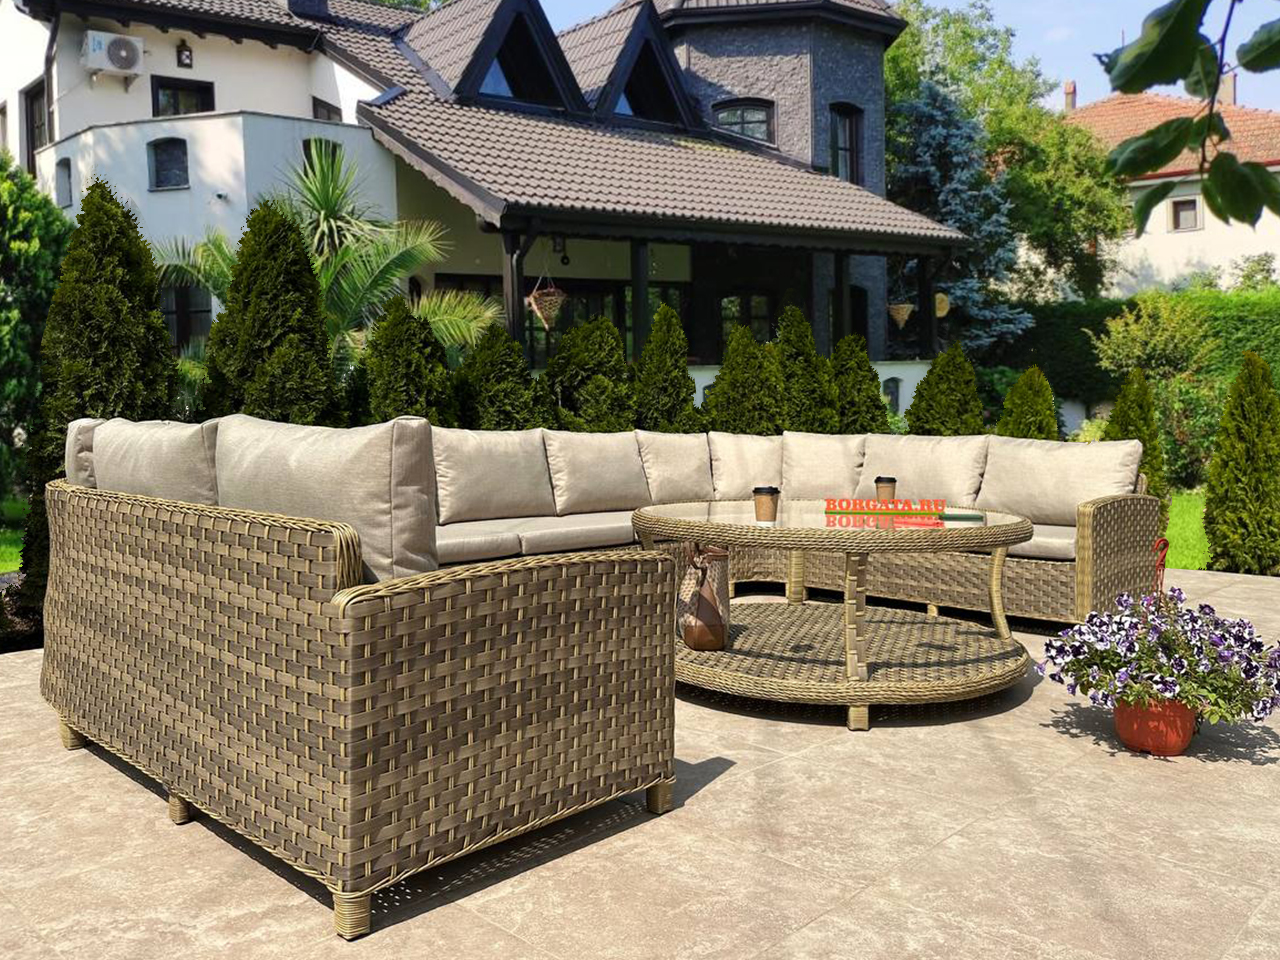 П-образный модульный диван ARIA nature с кофейным столиком D150 ARIA для беседки или террасы загородного особняка